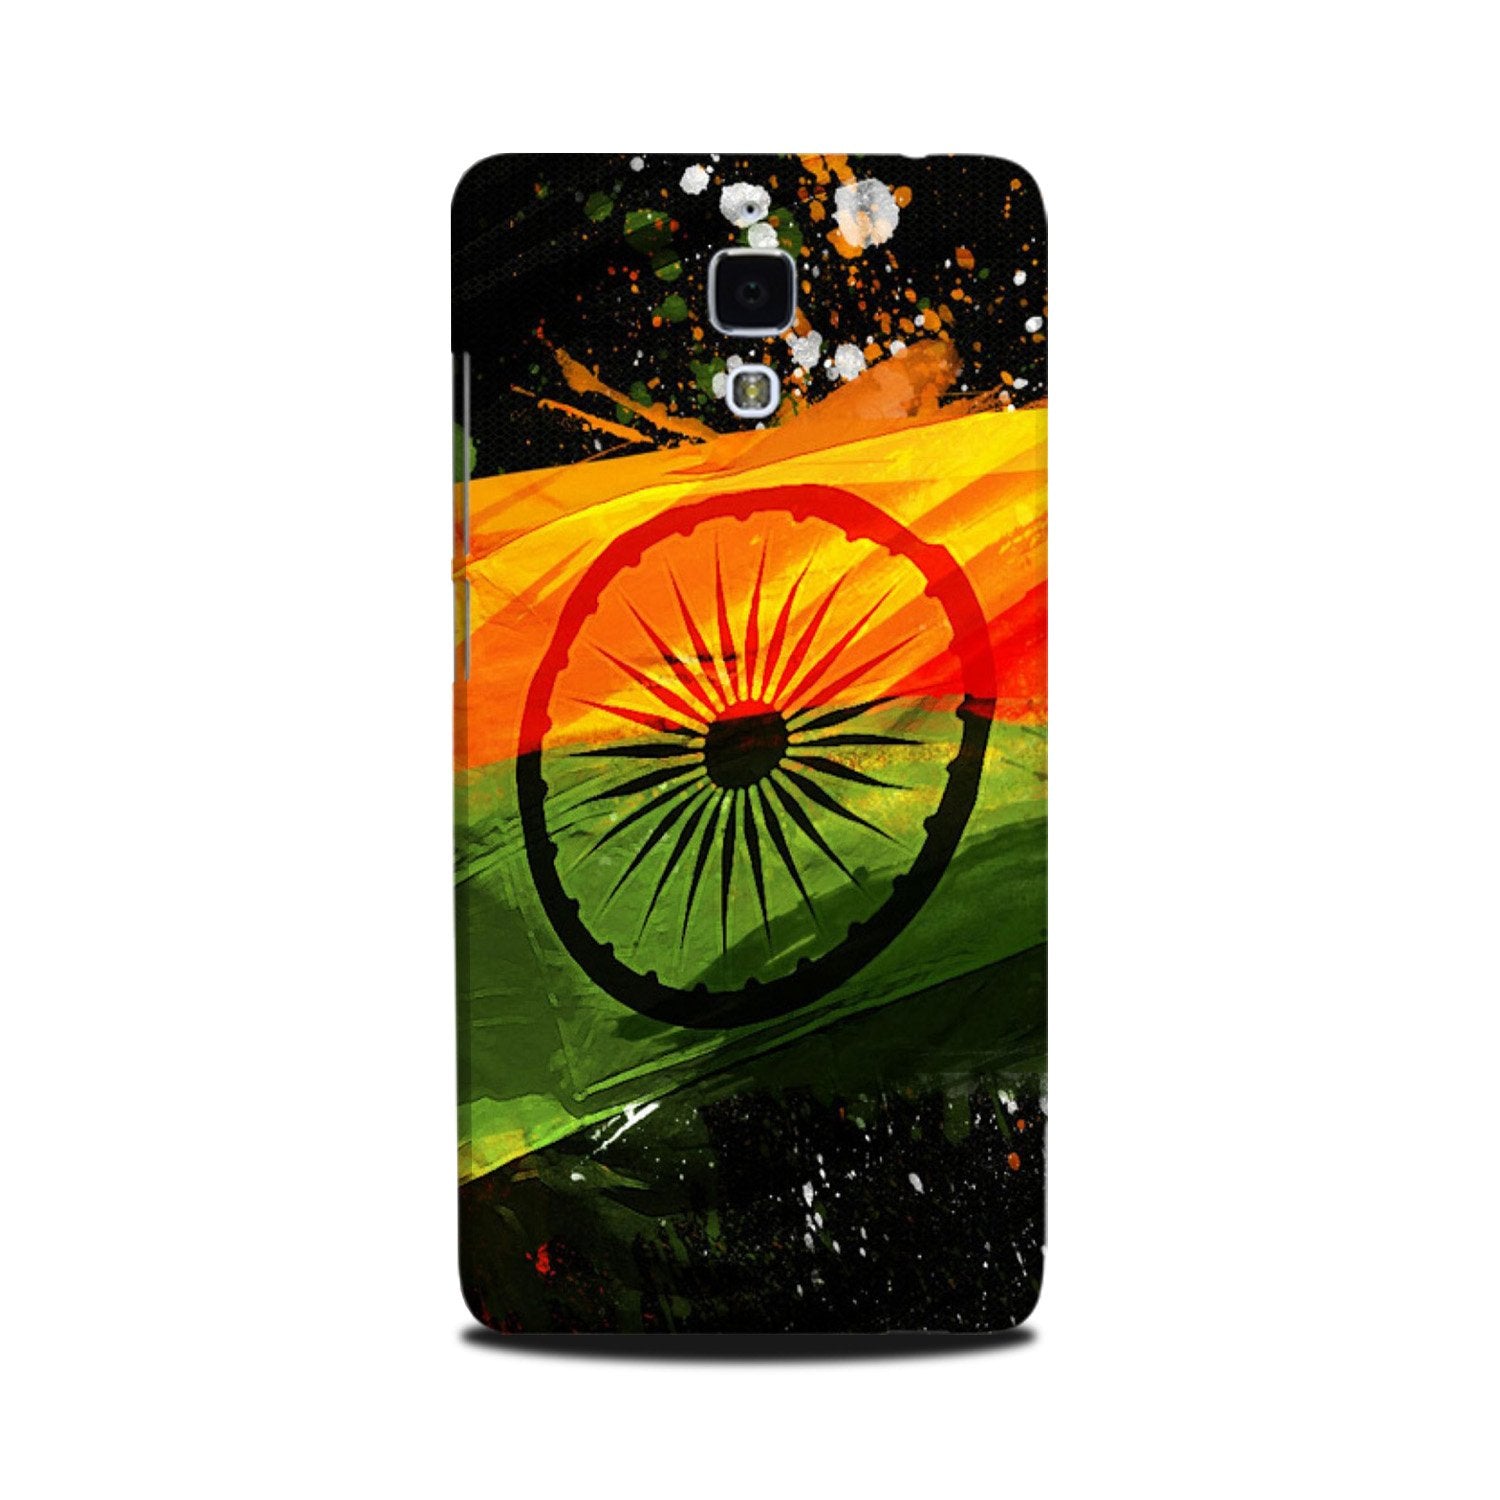 Indian Flag Case for Mi 4(Design - 137)